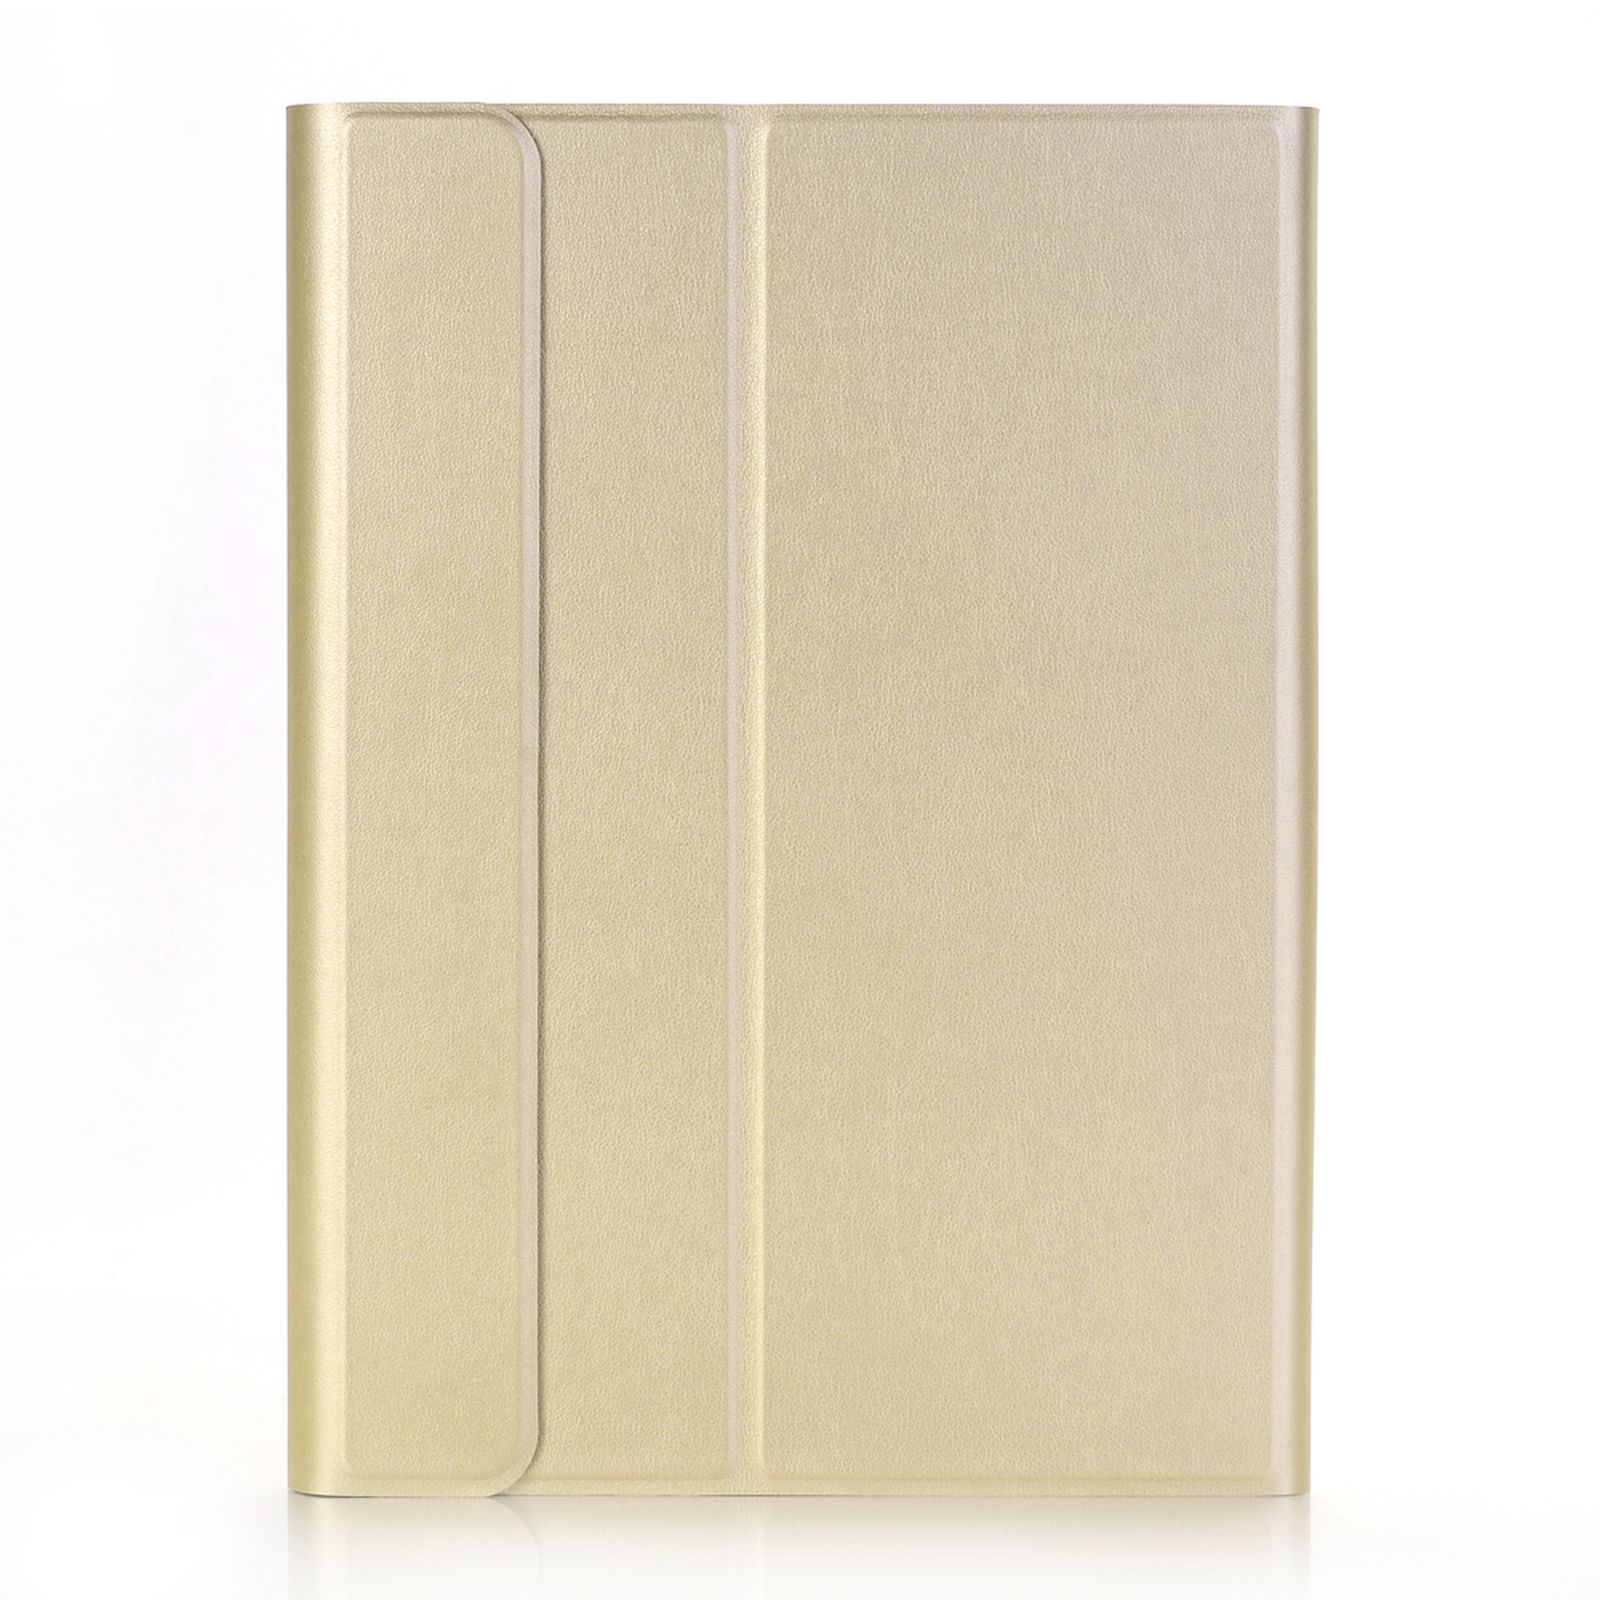 LOBWERK 3in1 Zoll Pro Case Zoll 3.Gen Kunststoff, 2017 Bookcover Schutzhülle für Air iPad gold 10.5 10.5 Apple 2019